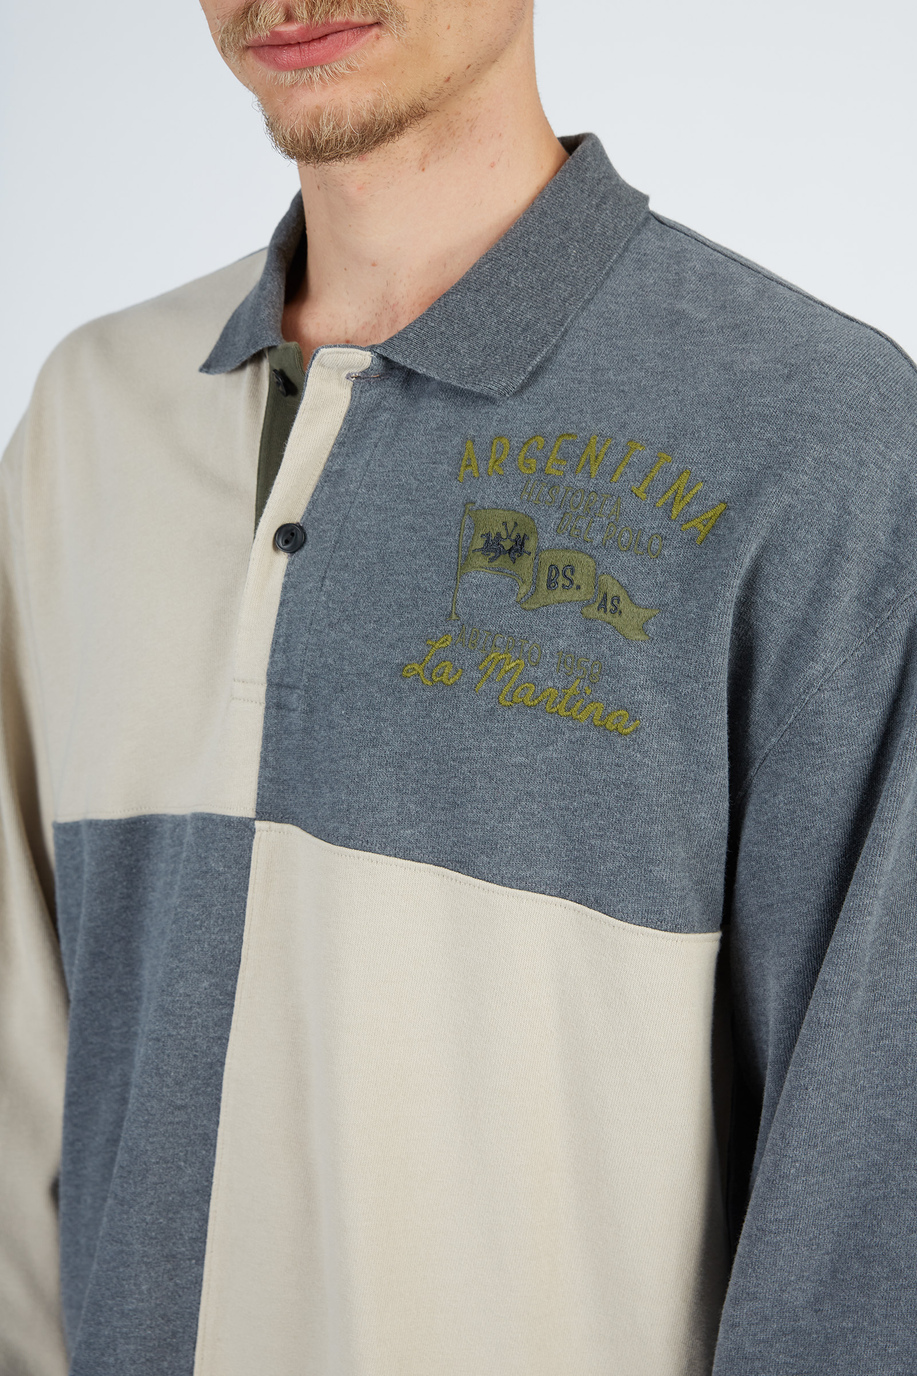 Leyendas Polo Shirt long sleeves in oversize cotton - Leyendas del Polo | La Martina - Official Online Shop